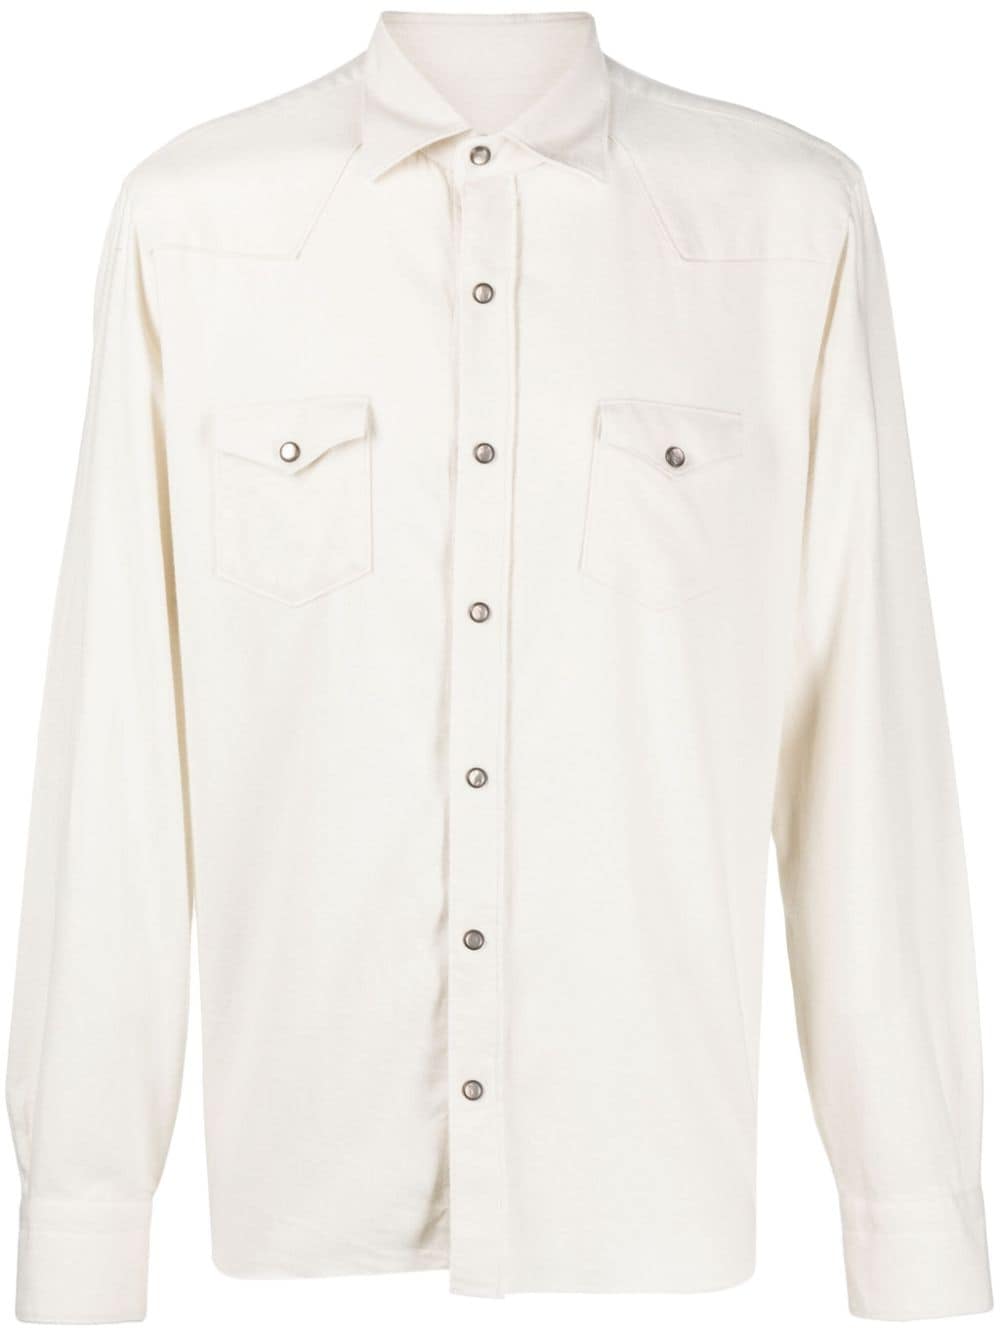 western-style cotton shirt jacket